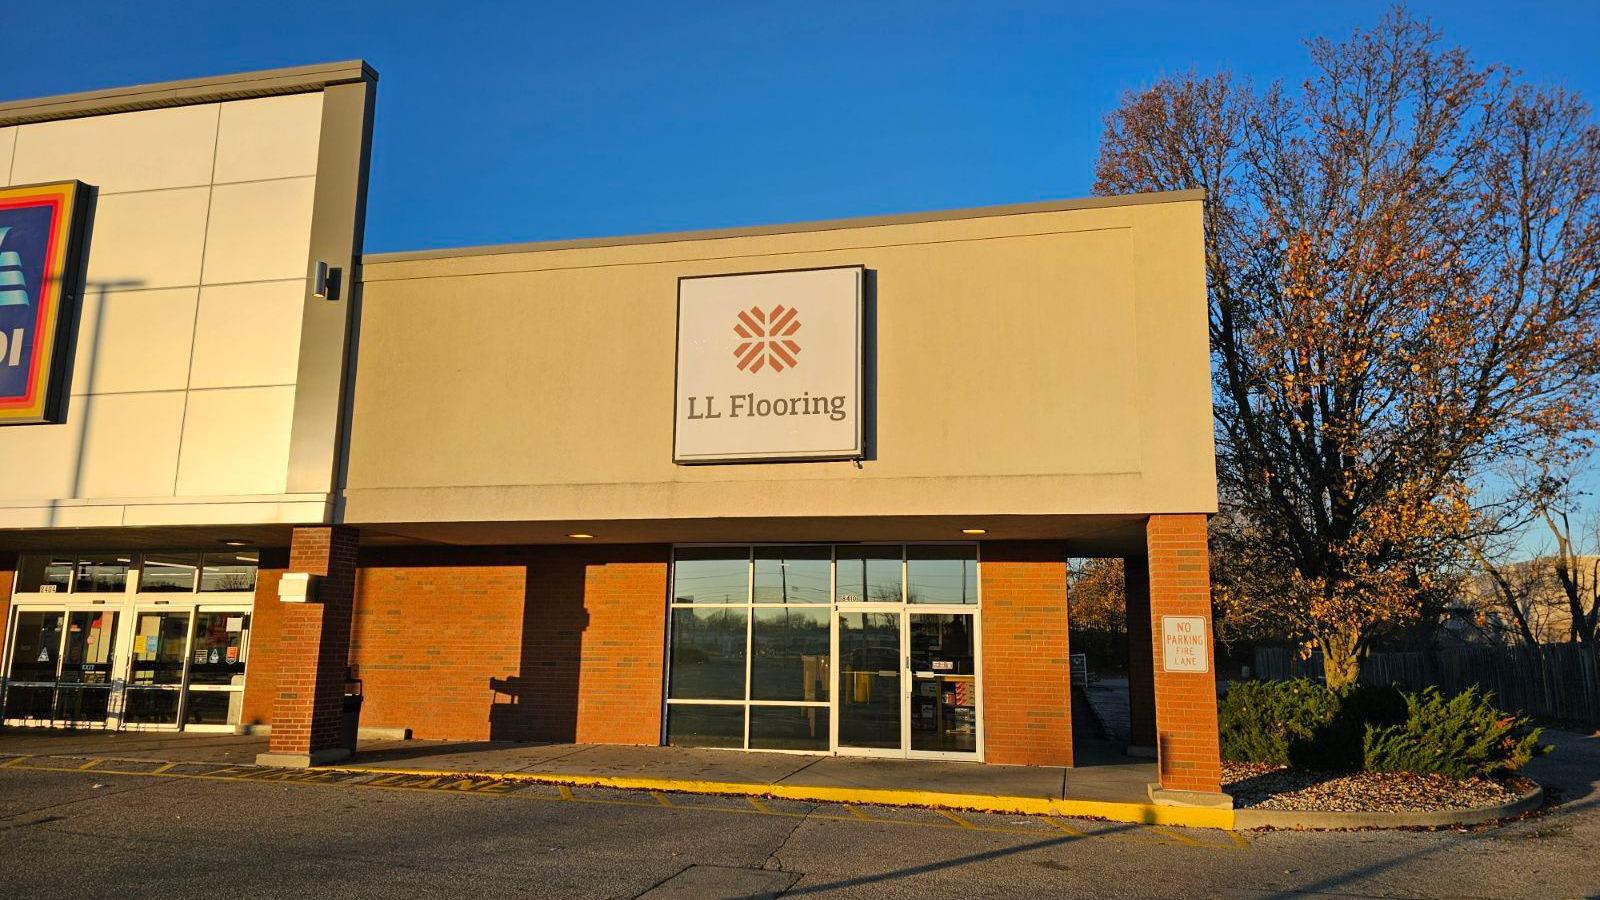 LL Flooring #1038 North Indianapolis | 8410 N Michigan Rd | Storefront LL Flooring Indianapolis (317)541-1444